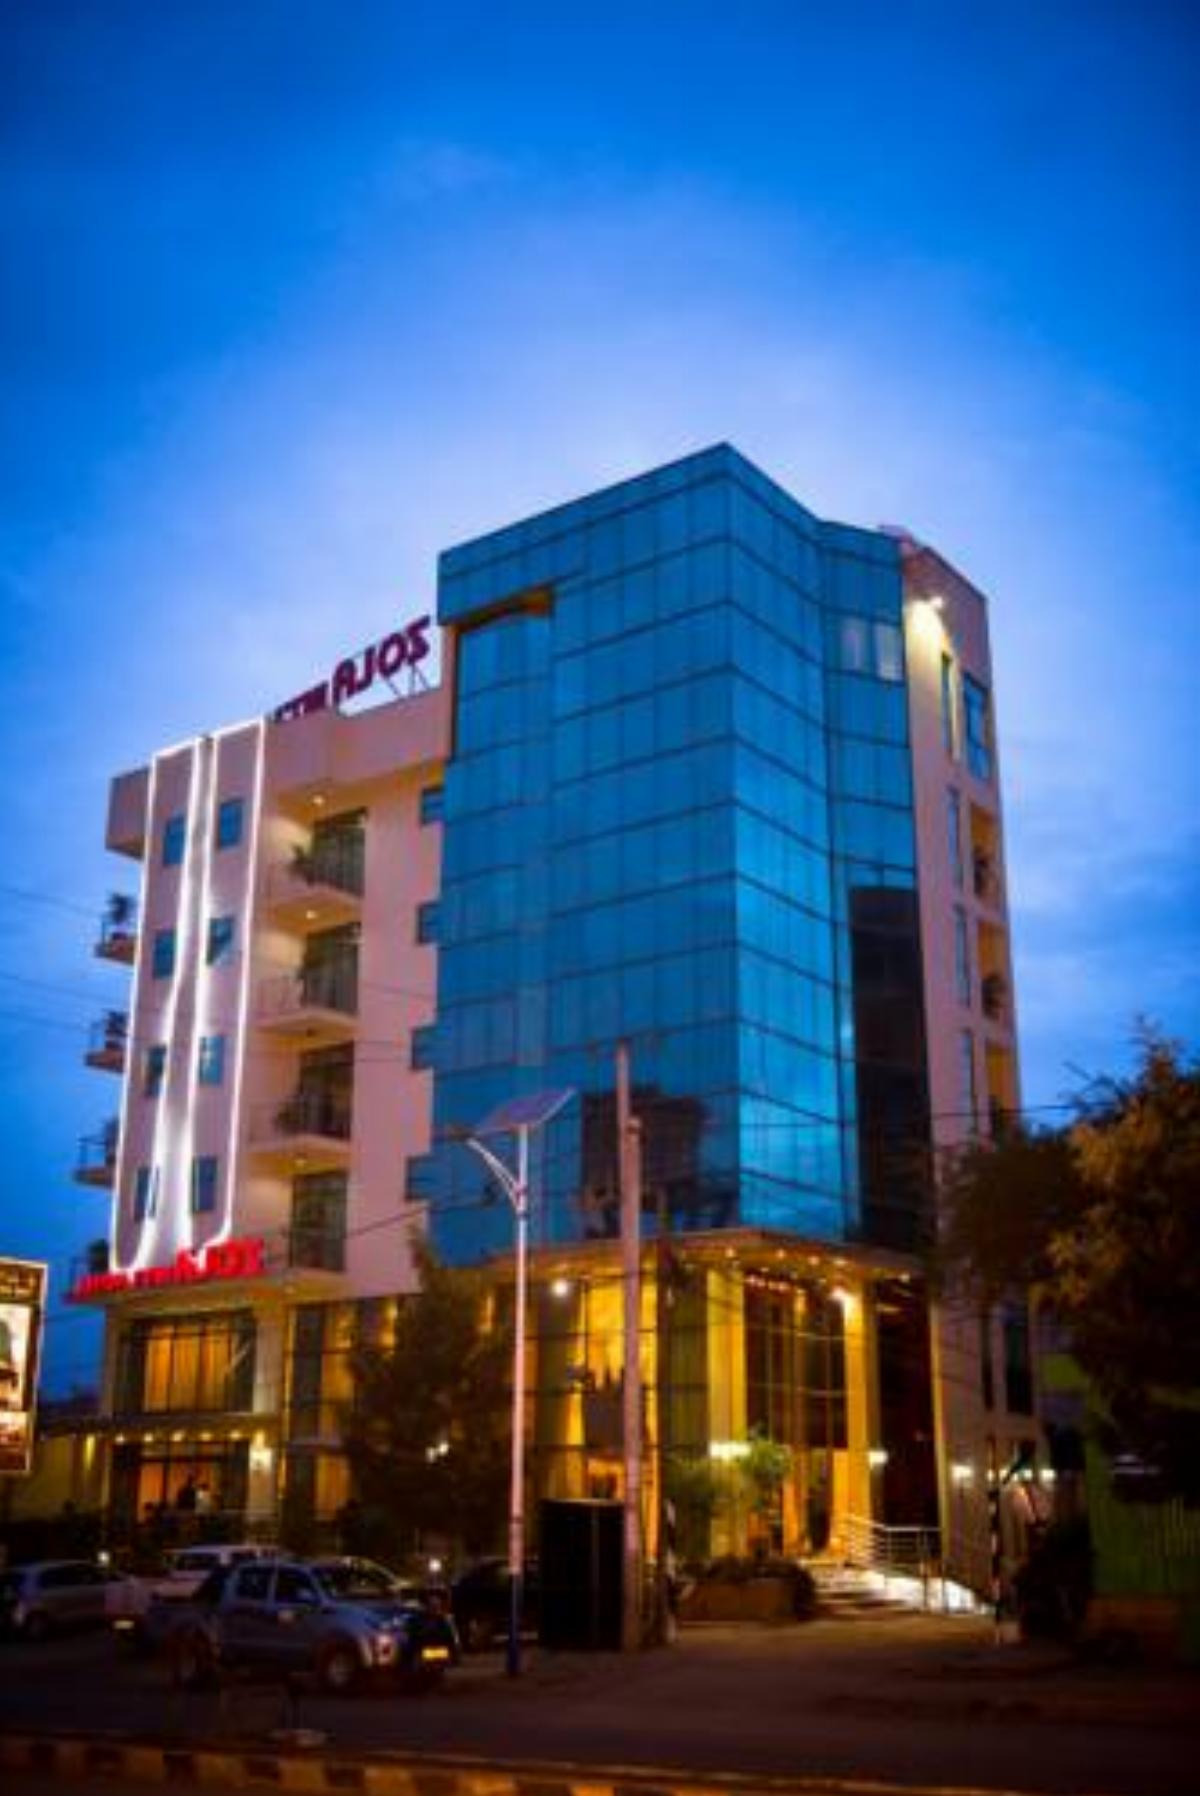 Zola International Hotel Hotel Addis Ababa Ethiopia